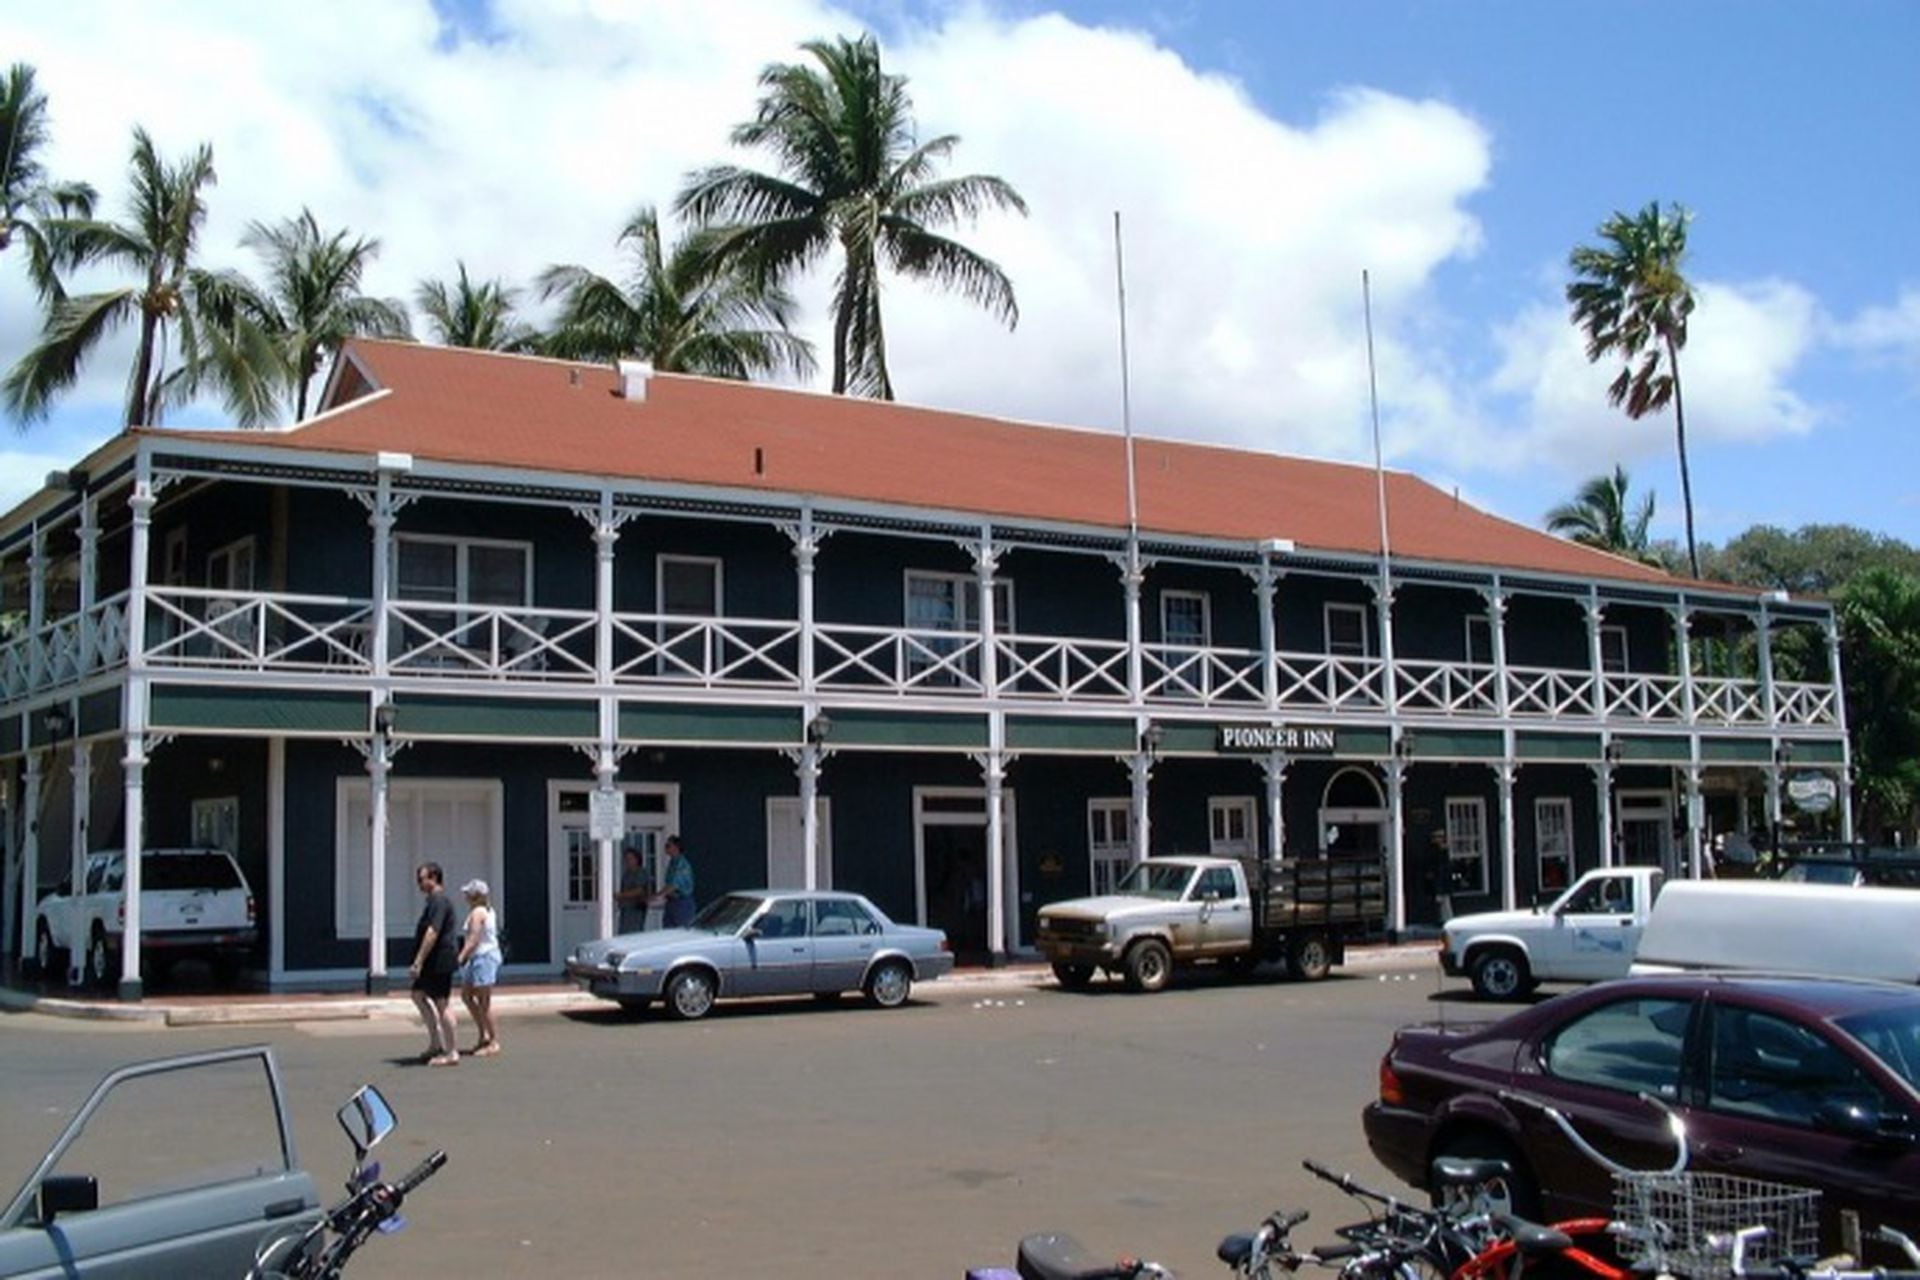 El hotel Pioneer Inn. Guillermo Vilas y Carolina de Mónaco, 1982, en Maui, Hawái